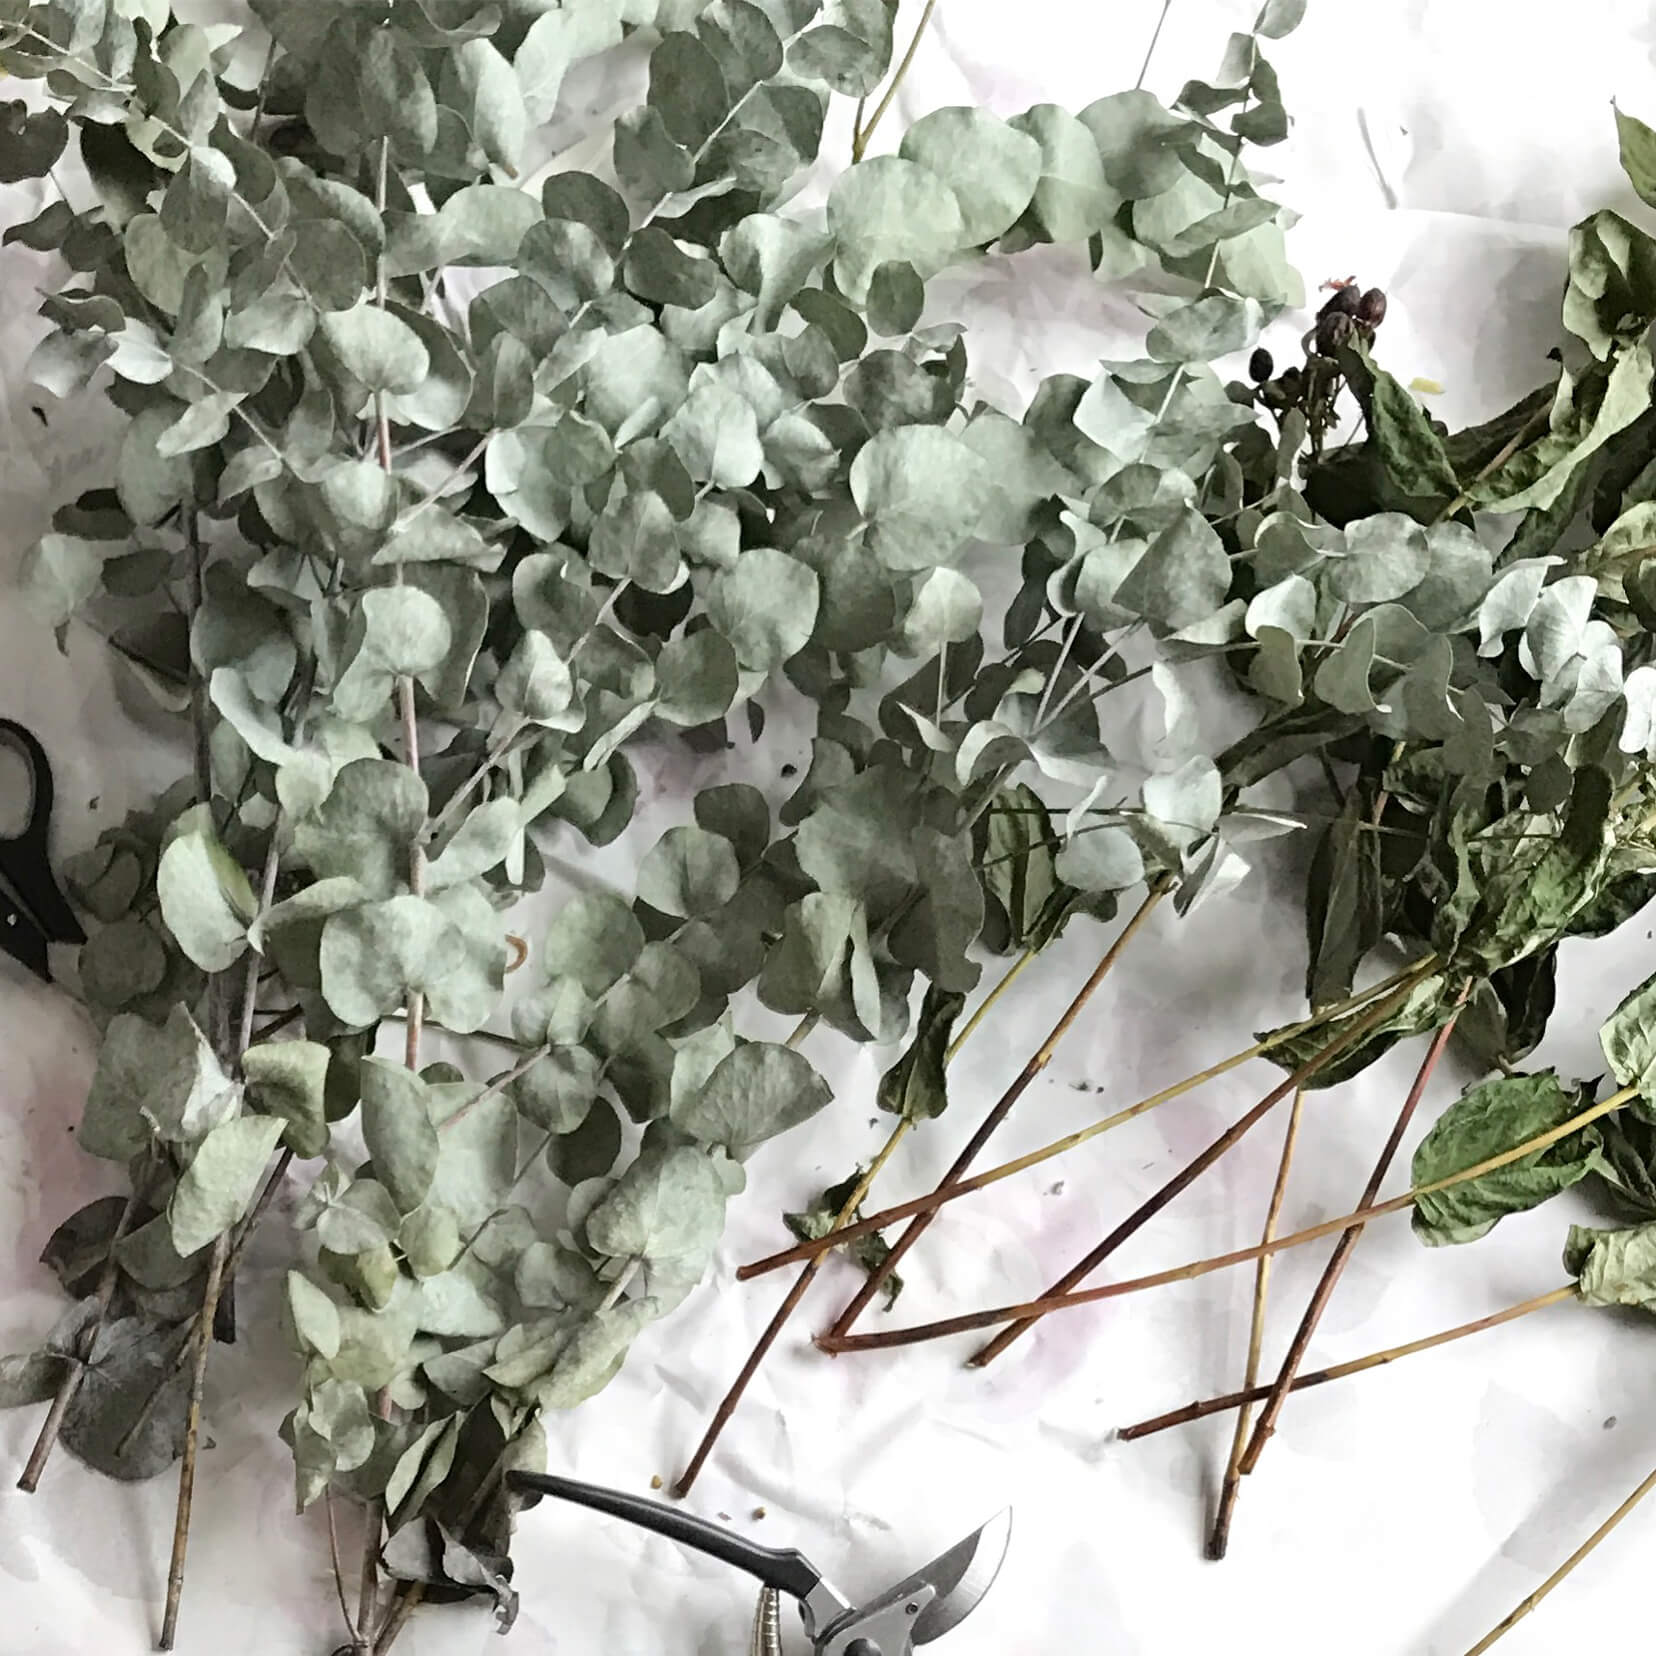 Un-arranged eucalyptus branches on white florist paper